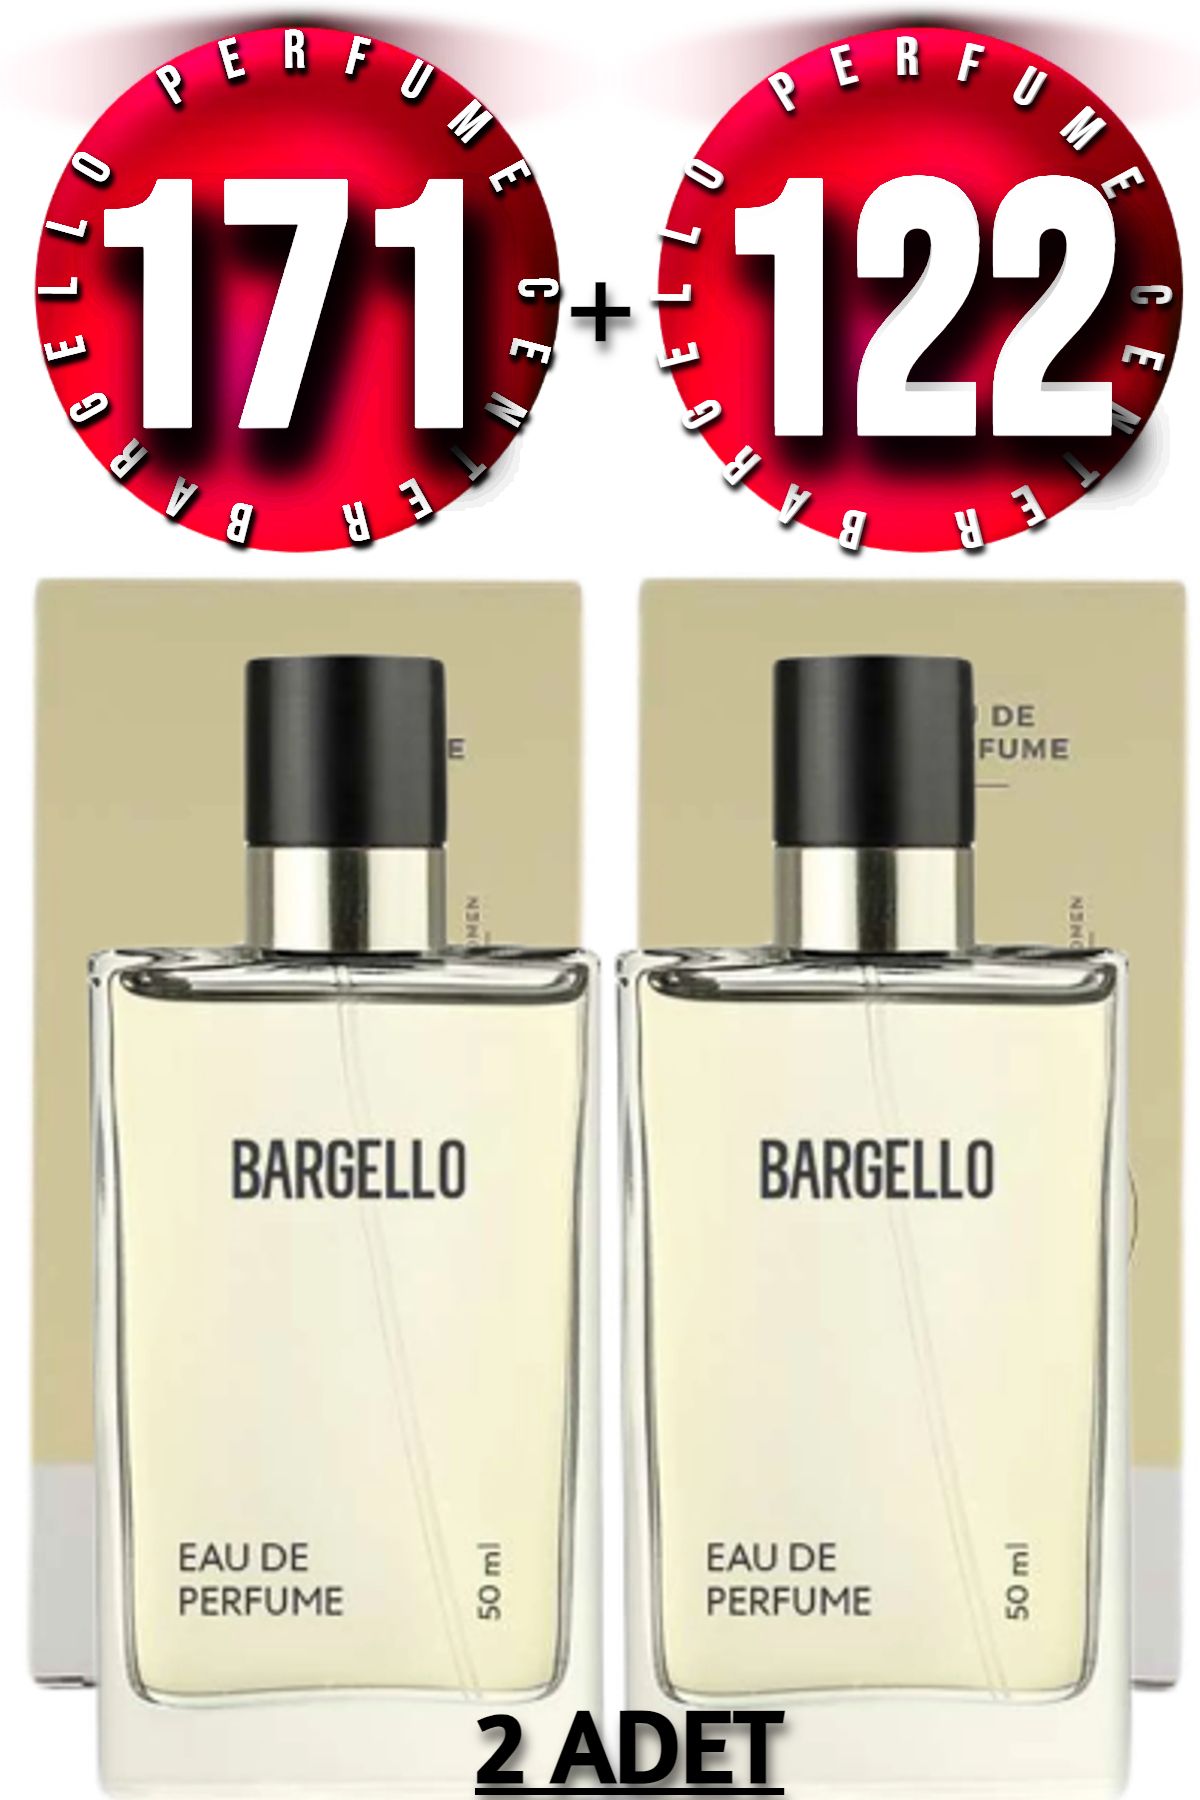 Bargello 171 Kadın Parfüm Floral 50 ml Edp 122 Kadın Parfüm Oriental 50 ml Edp 2 Adet Ürün